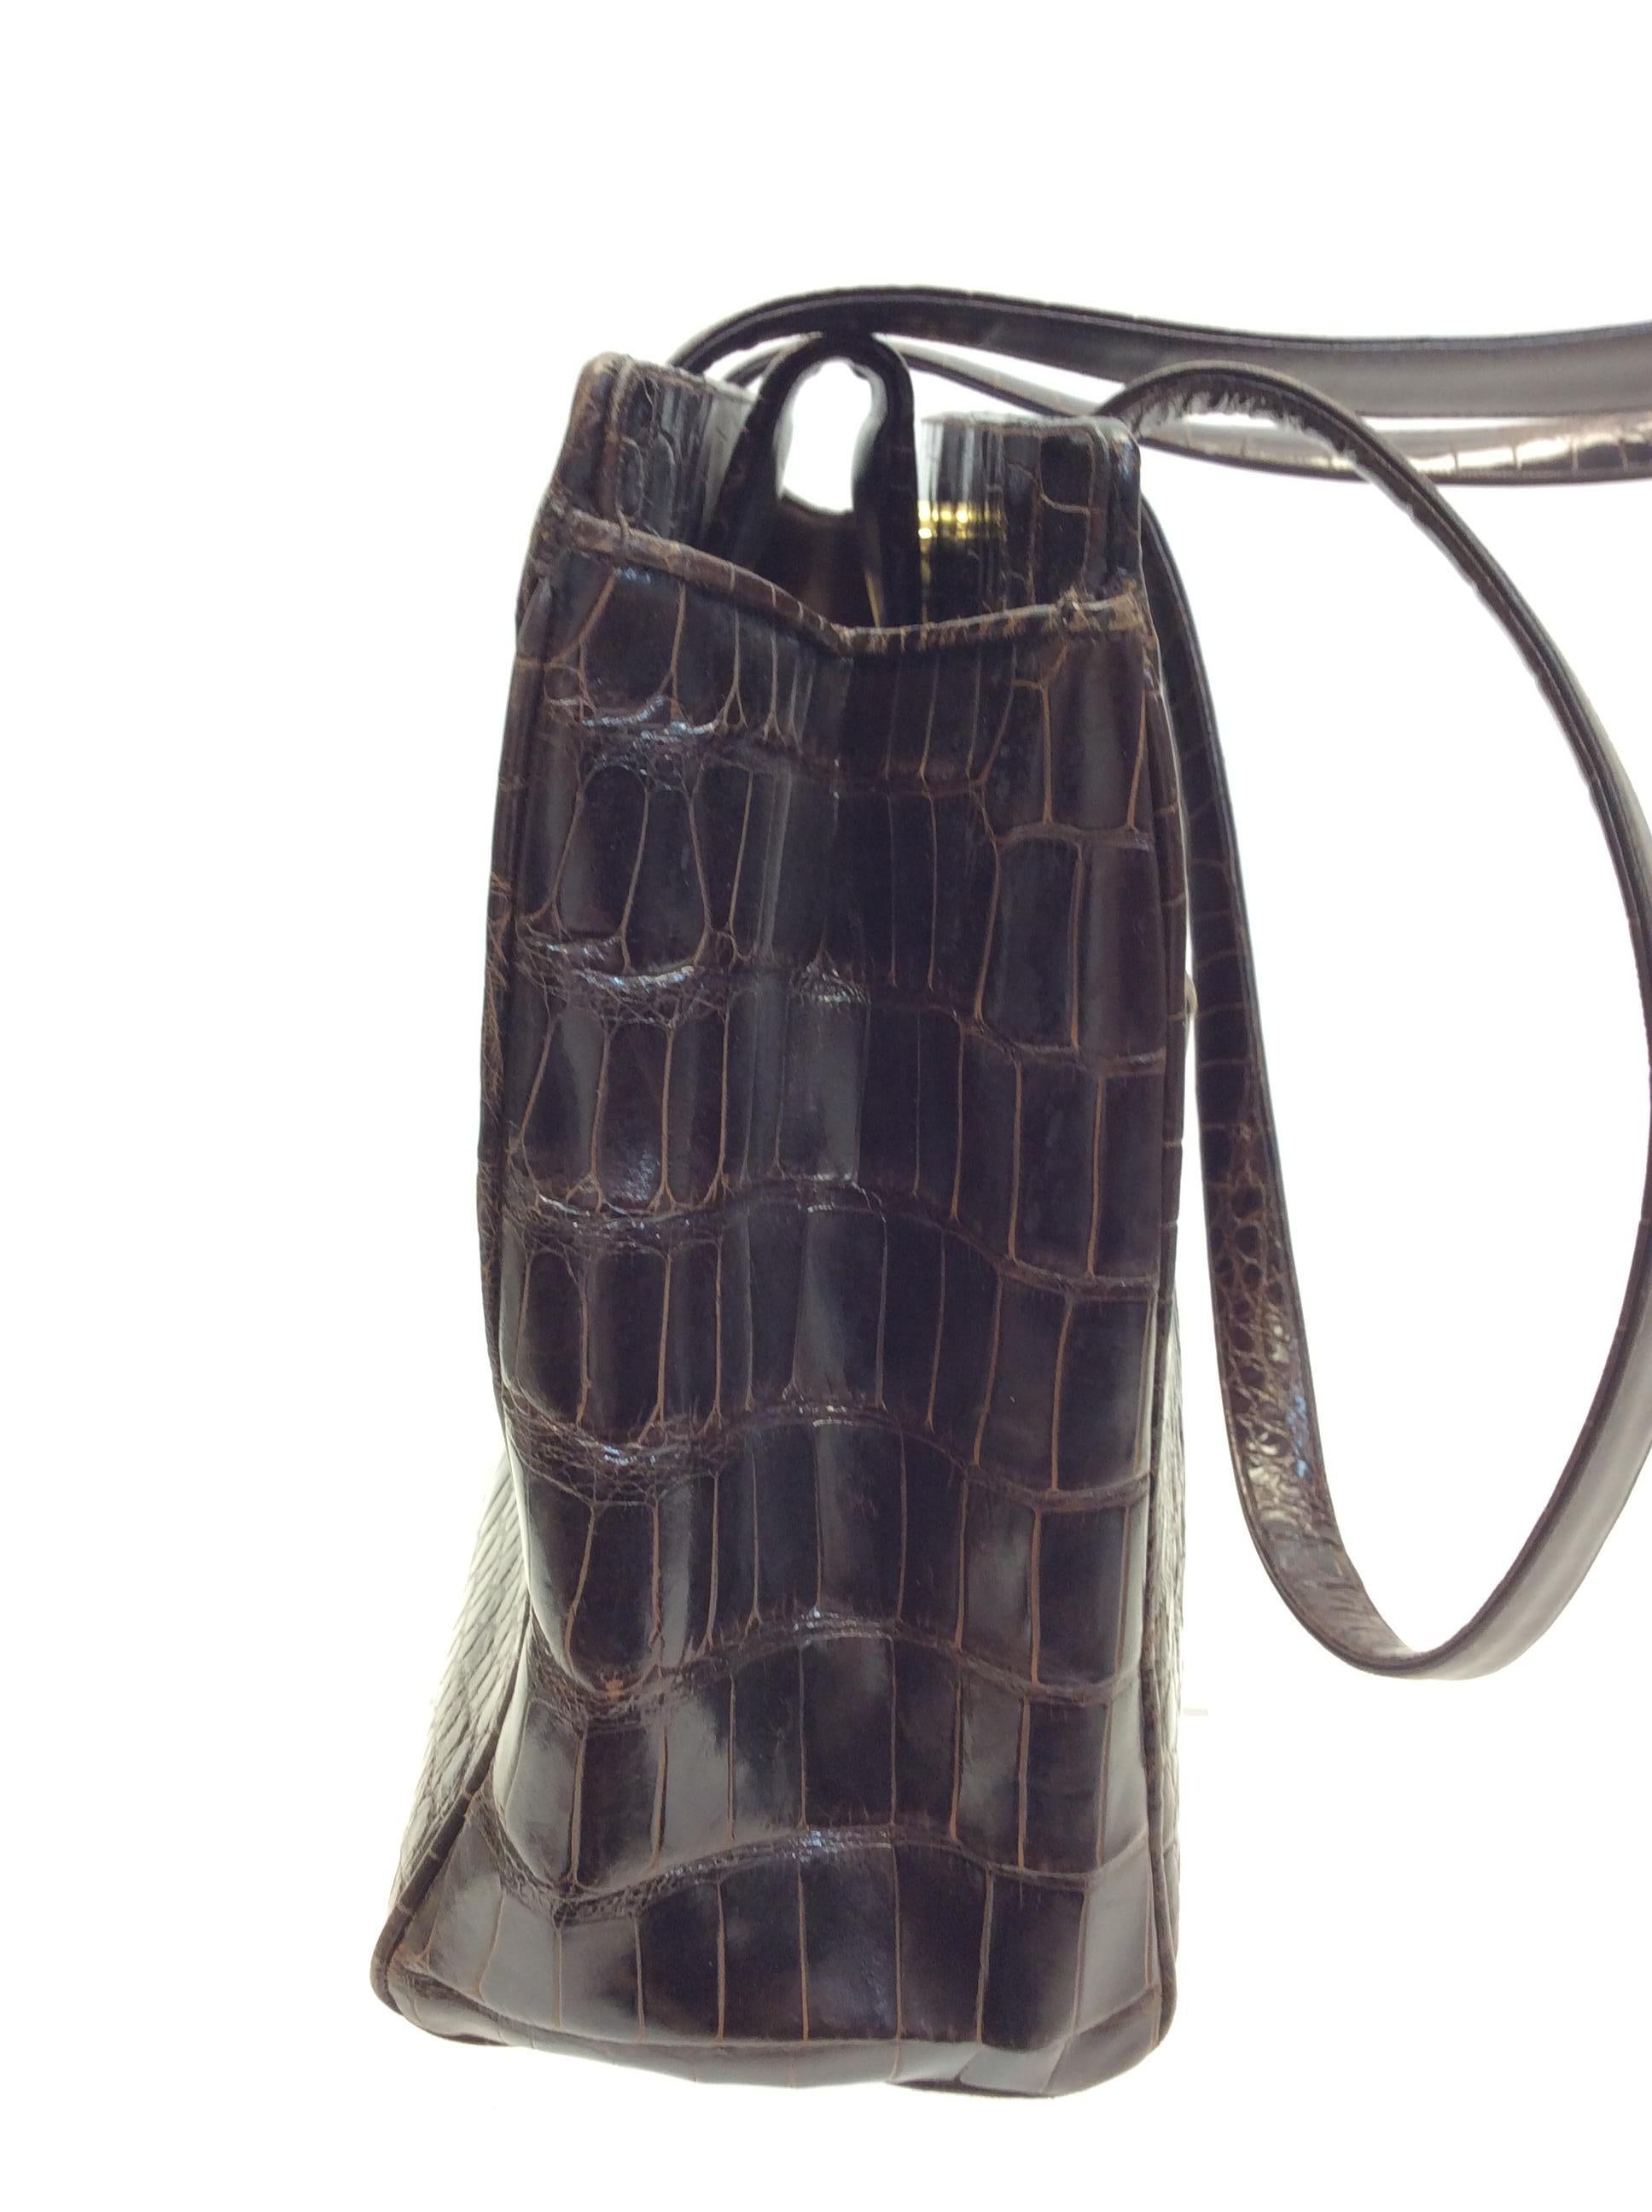 Judith Leiber BrownCrocodile Shoulder Bag
$1299
15